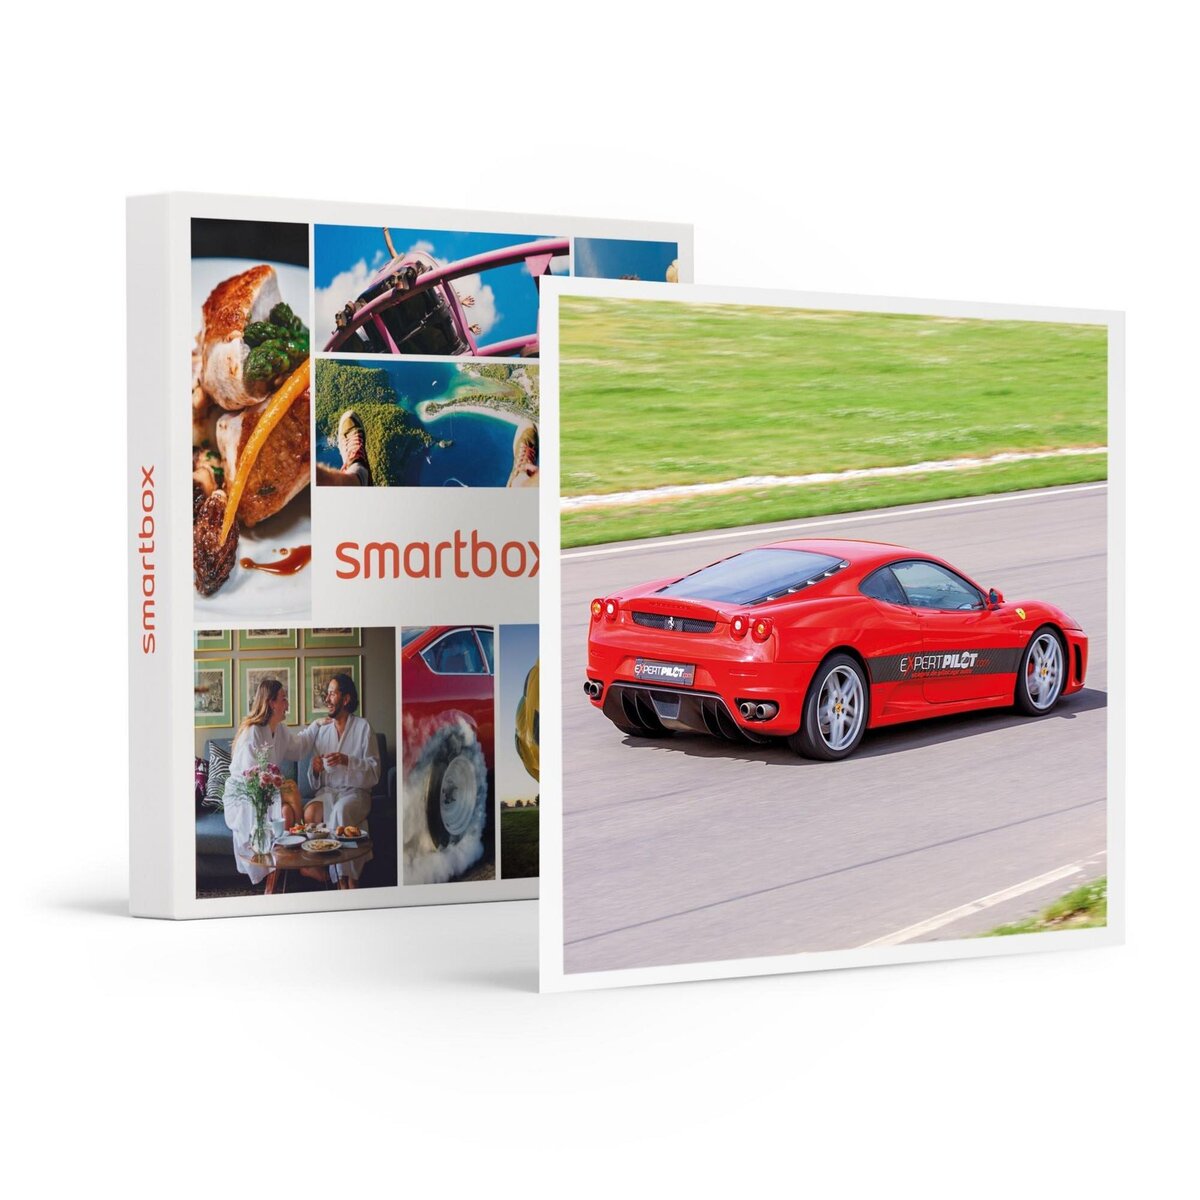 Smartbox 3 tours de circuit au volant d'une Ferrari, Lamborghini Huracan ou Porsche - Coffret Cadeau Sport & Aventure